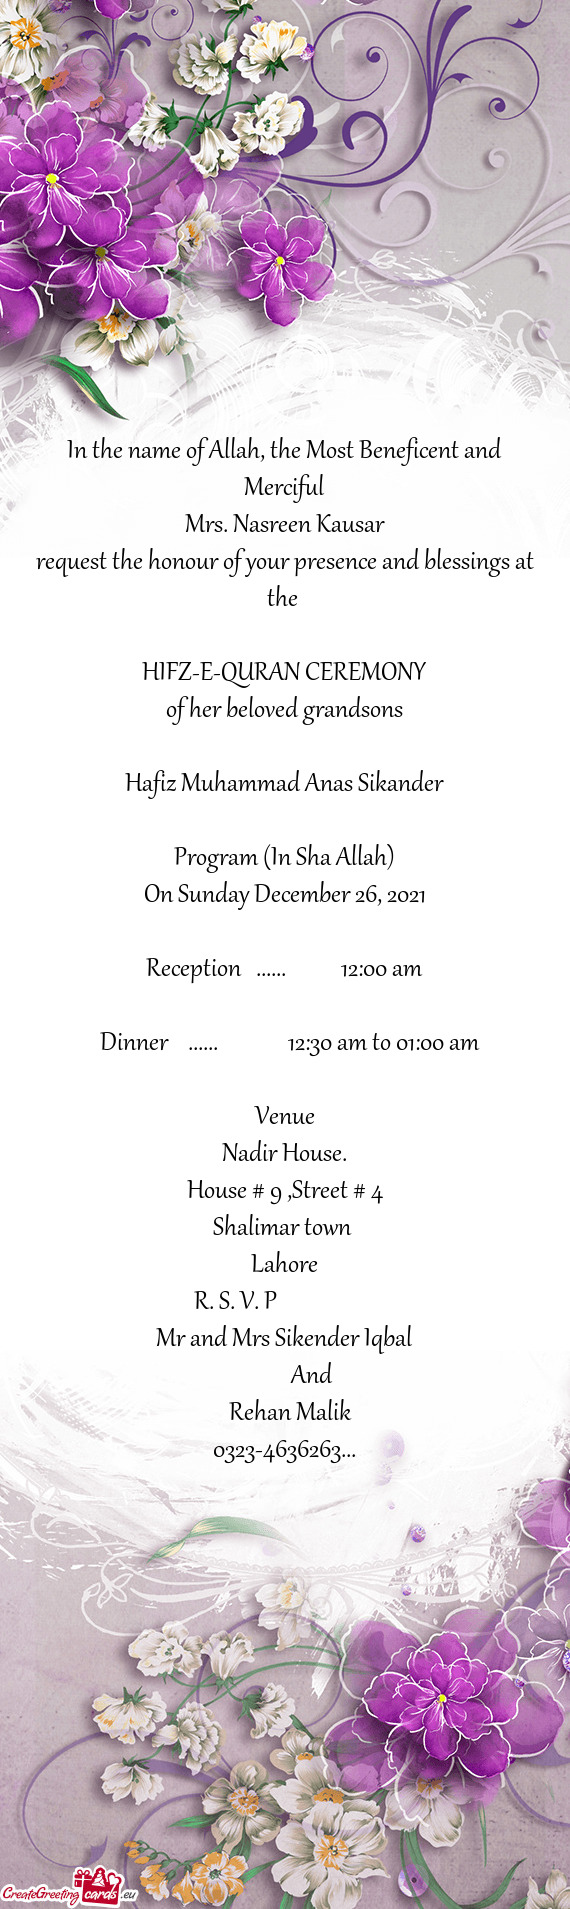 Program (In Sha Allah)